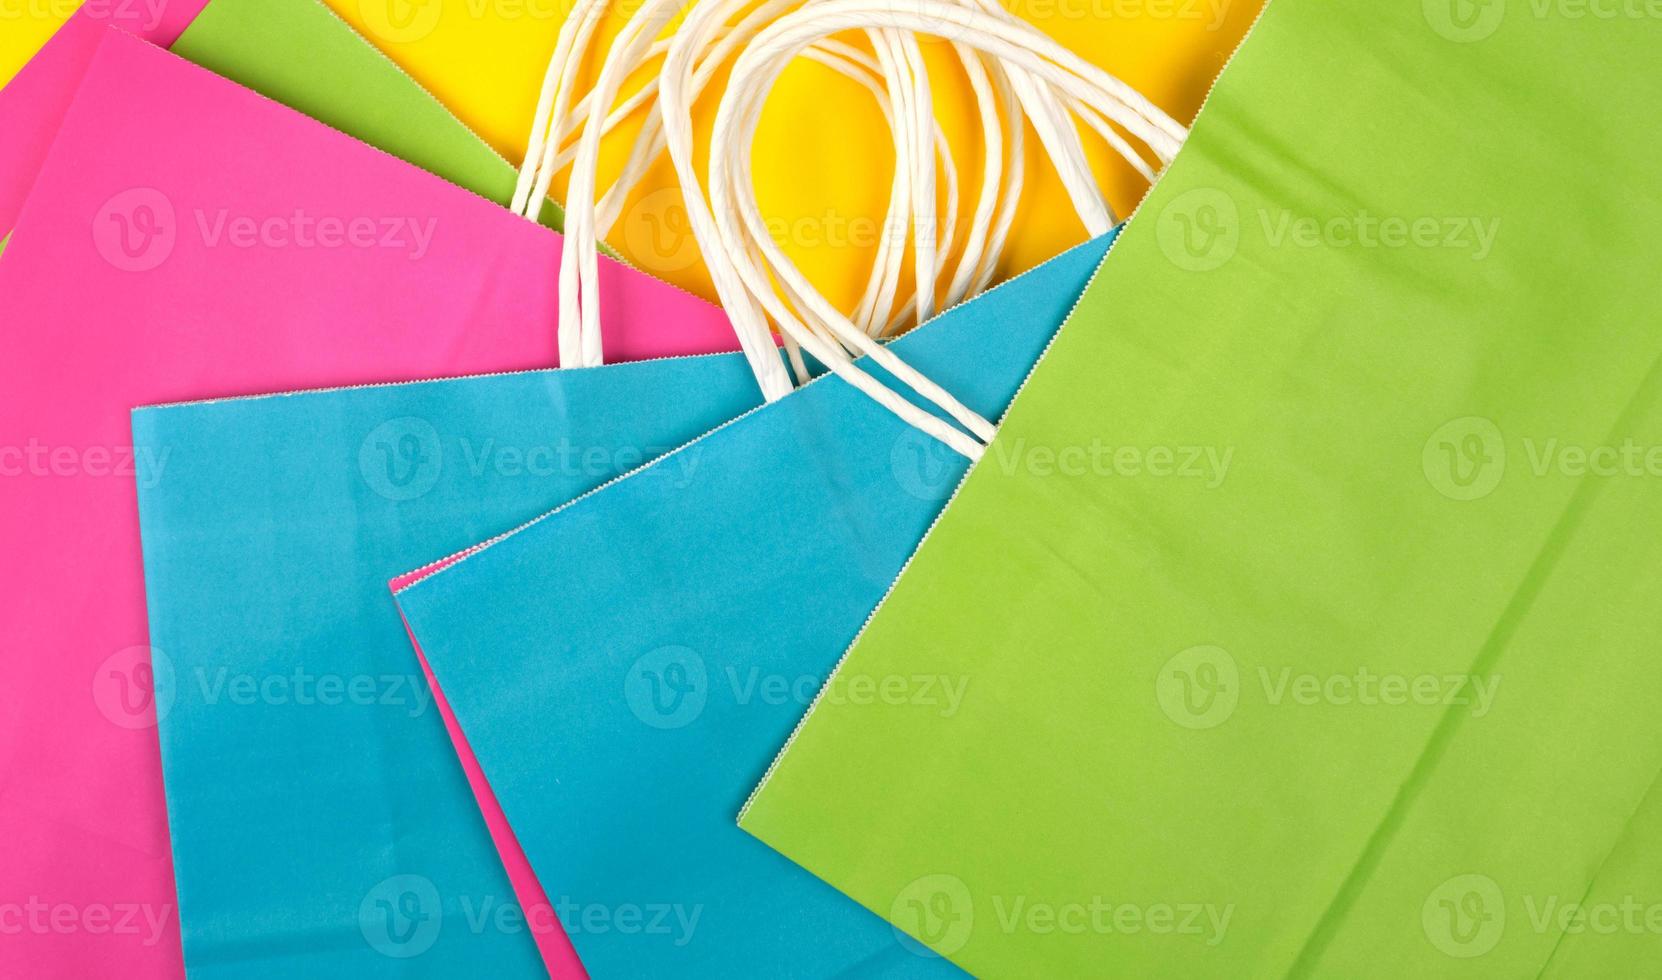 molti multicolore carta shopping borse con bianca maniglie foto